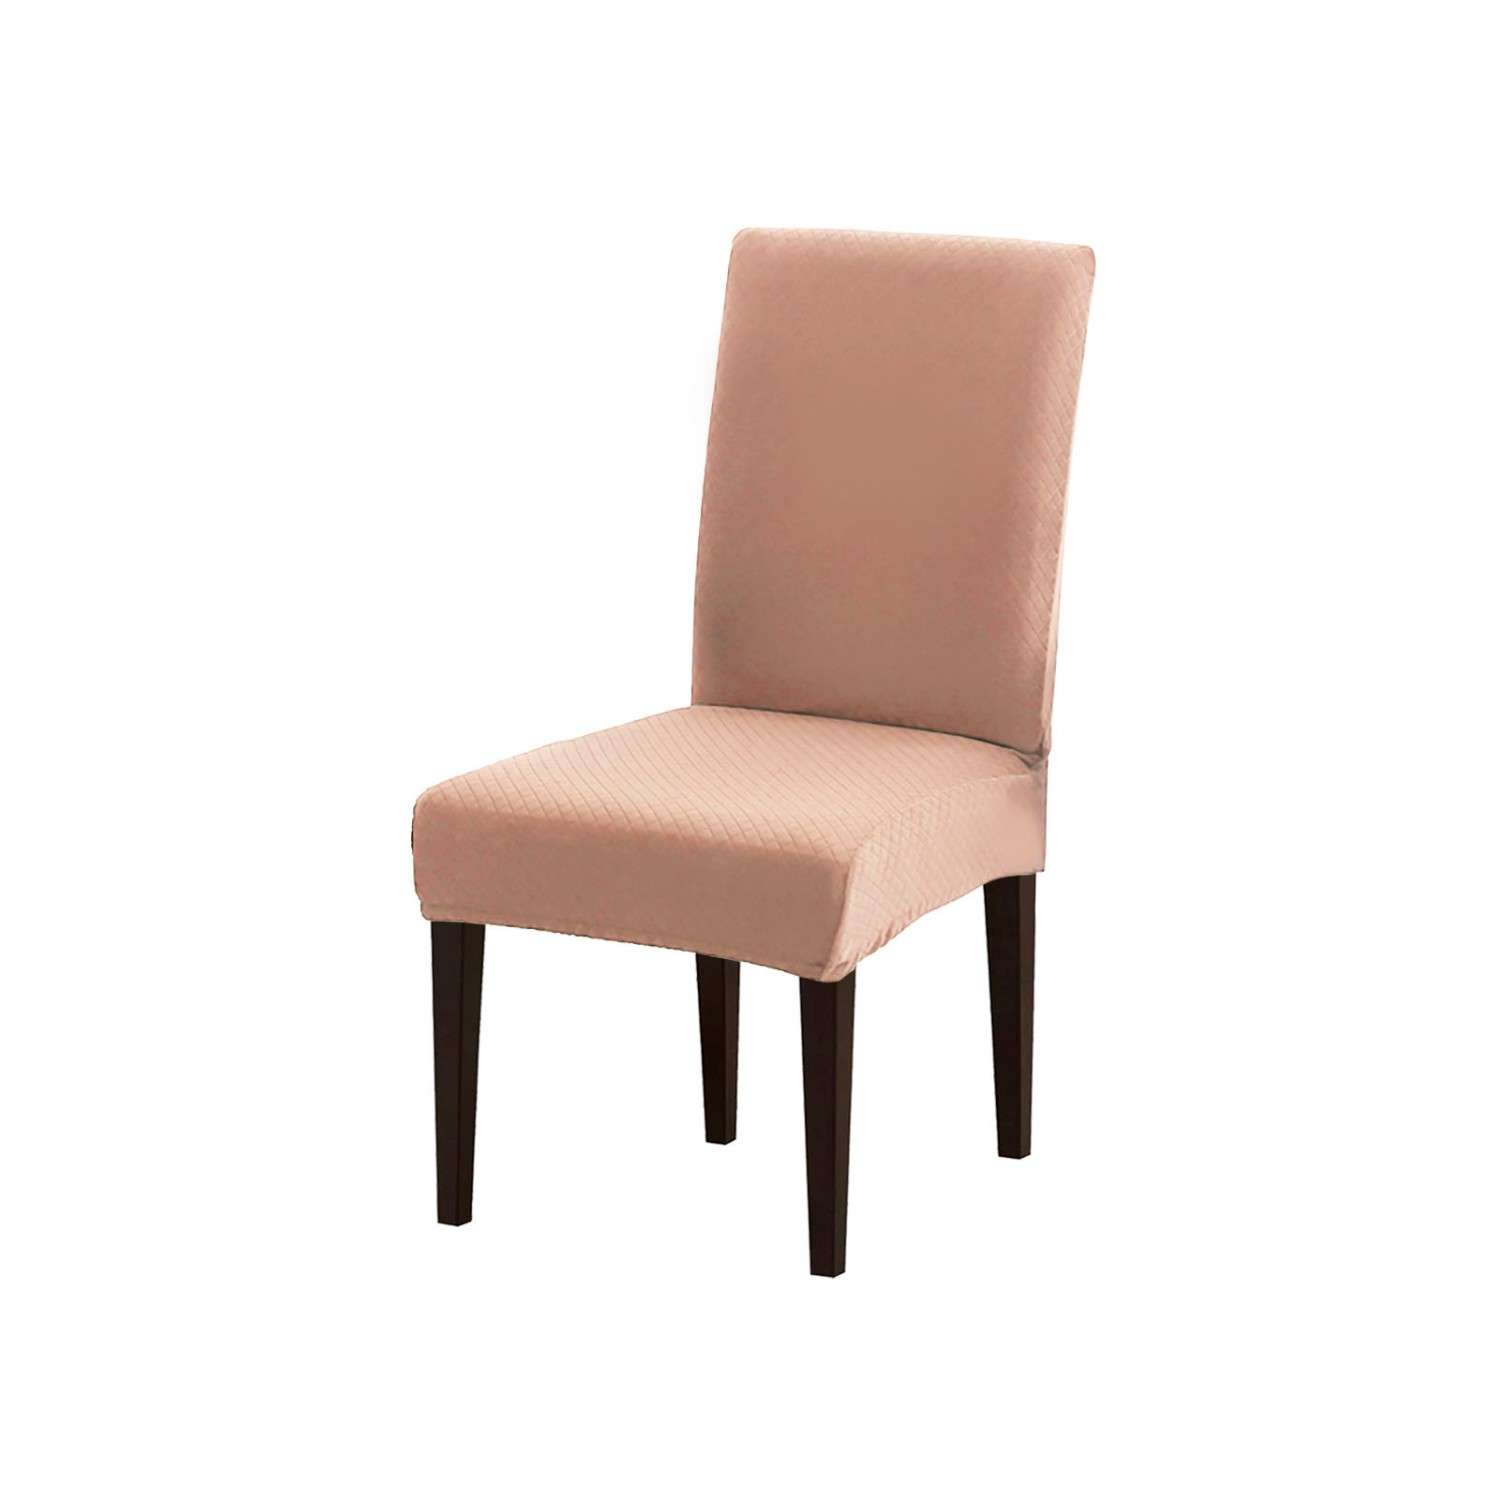 Чехол на стул LuxAlto Коллекция Quilting нежно-розовый - фото 1